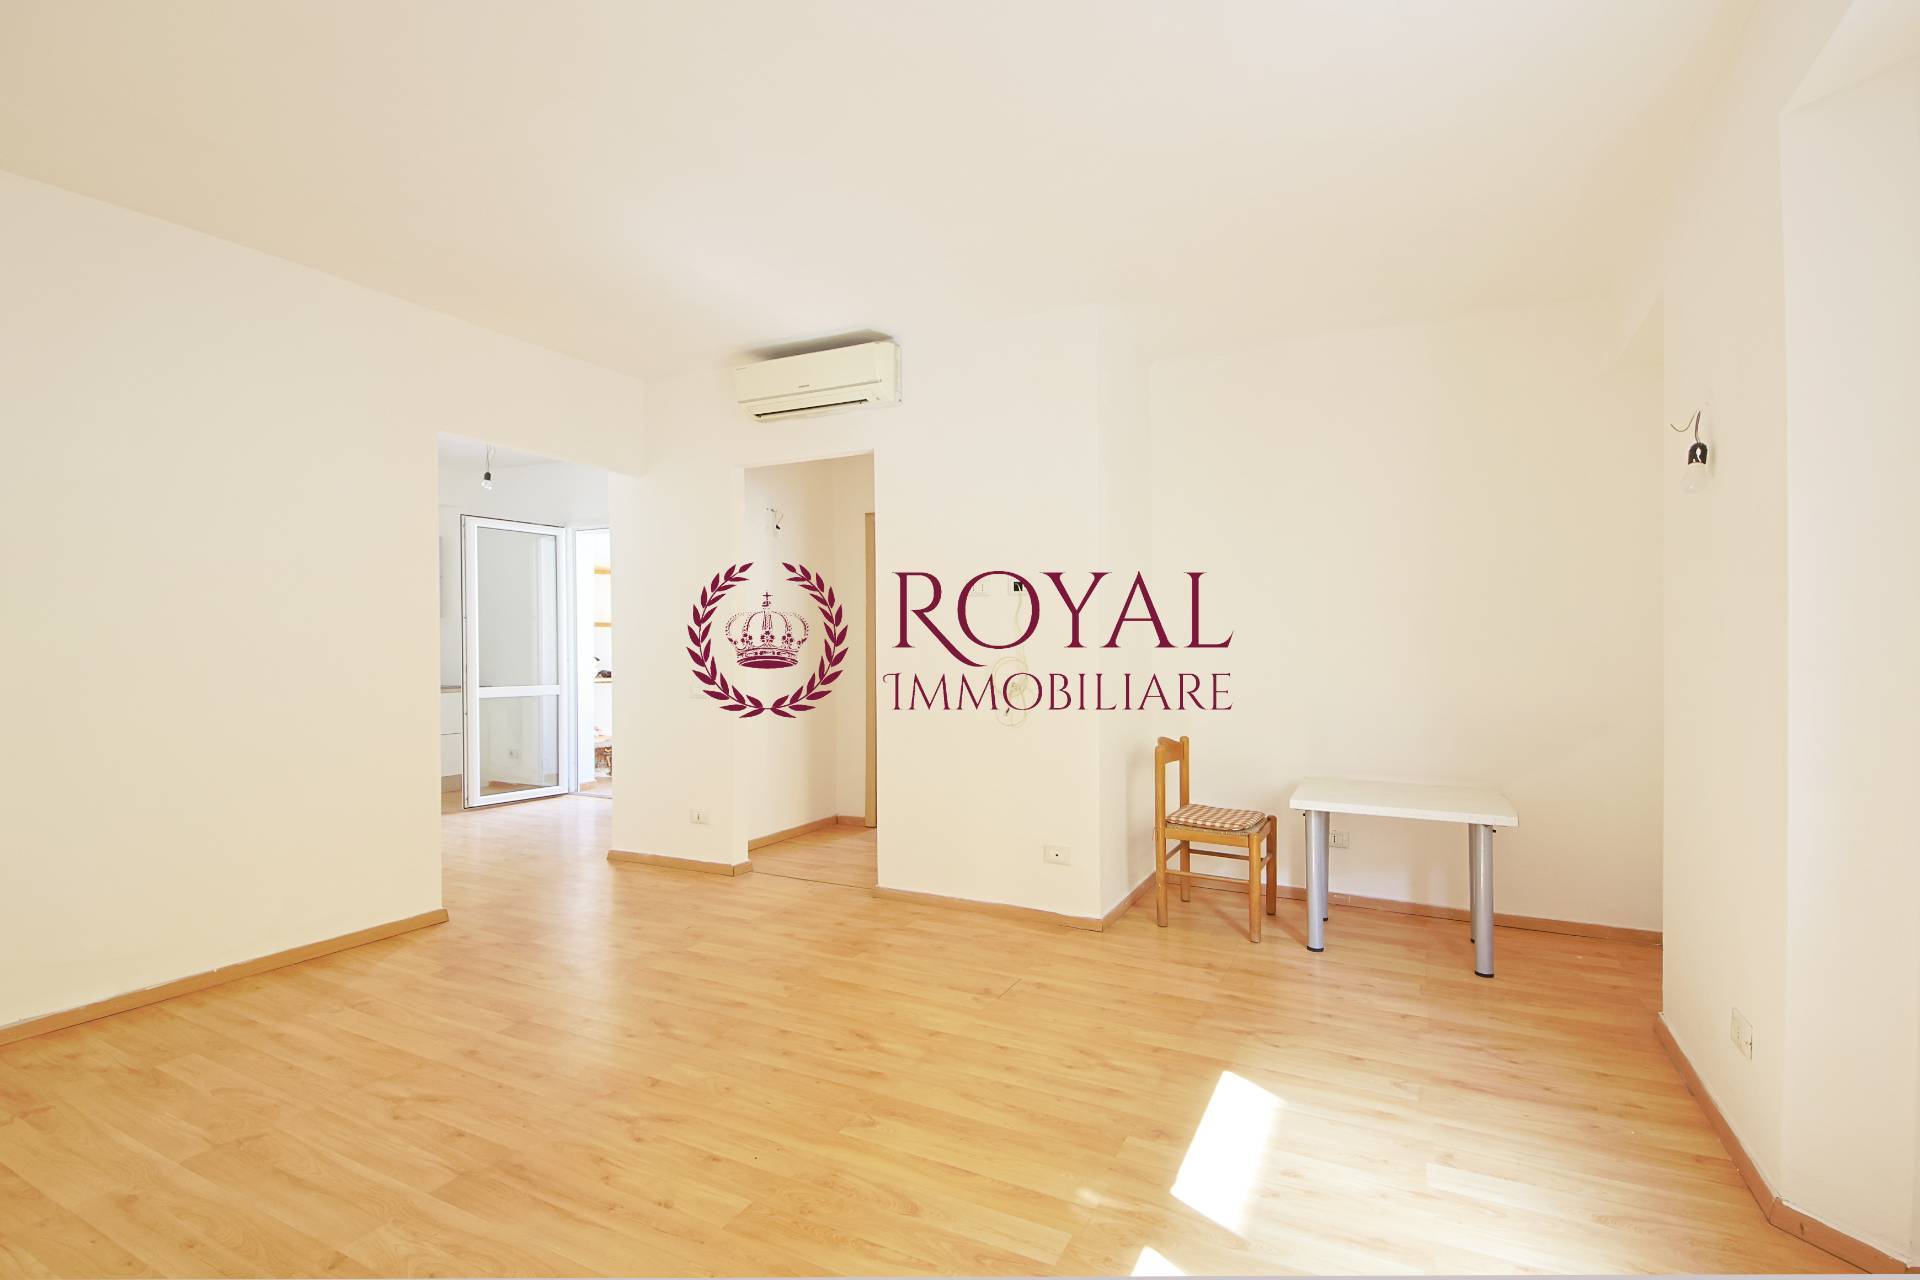 Appartamento in vendita a Livorno, 3 locali, zona ro, prezzo € 105.000 | PortaleAgenzieImmobiliari.it